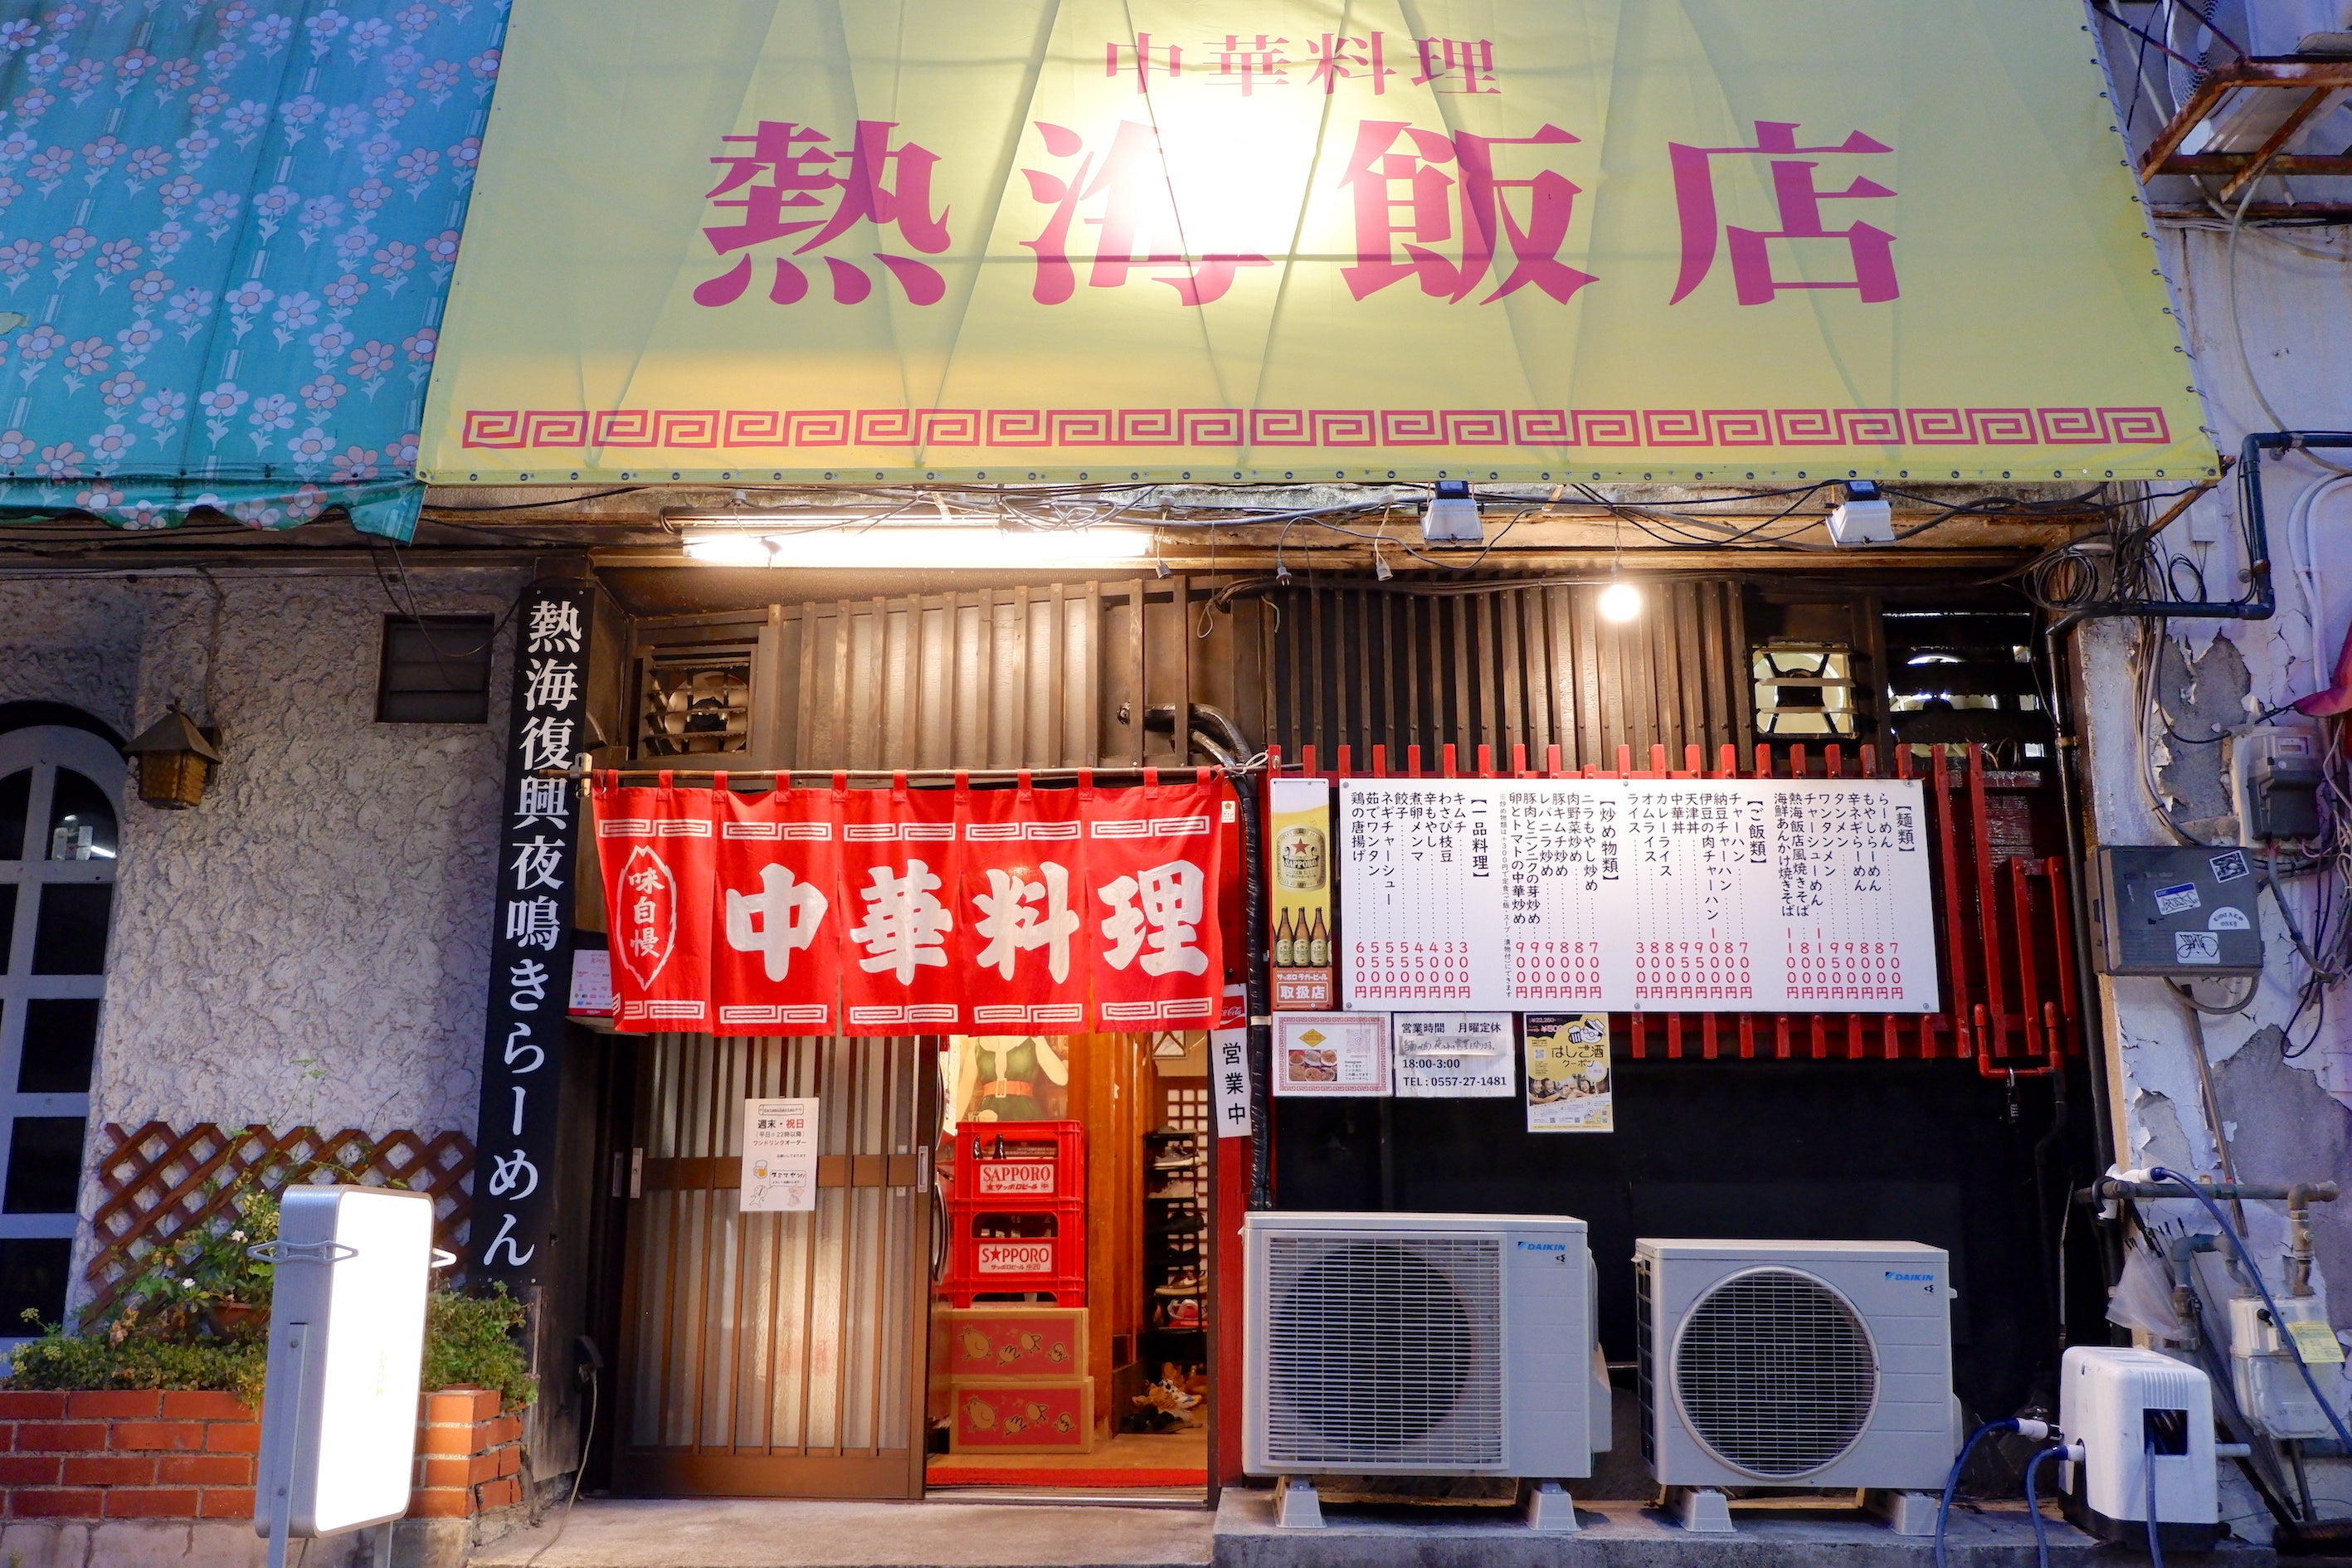 中華料理店「熱海飯店」が映画「温泉シャーク」との公式コラボメニューを販売開始